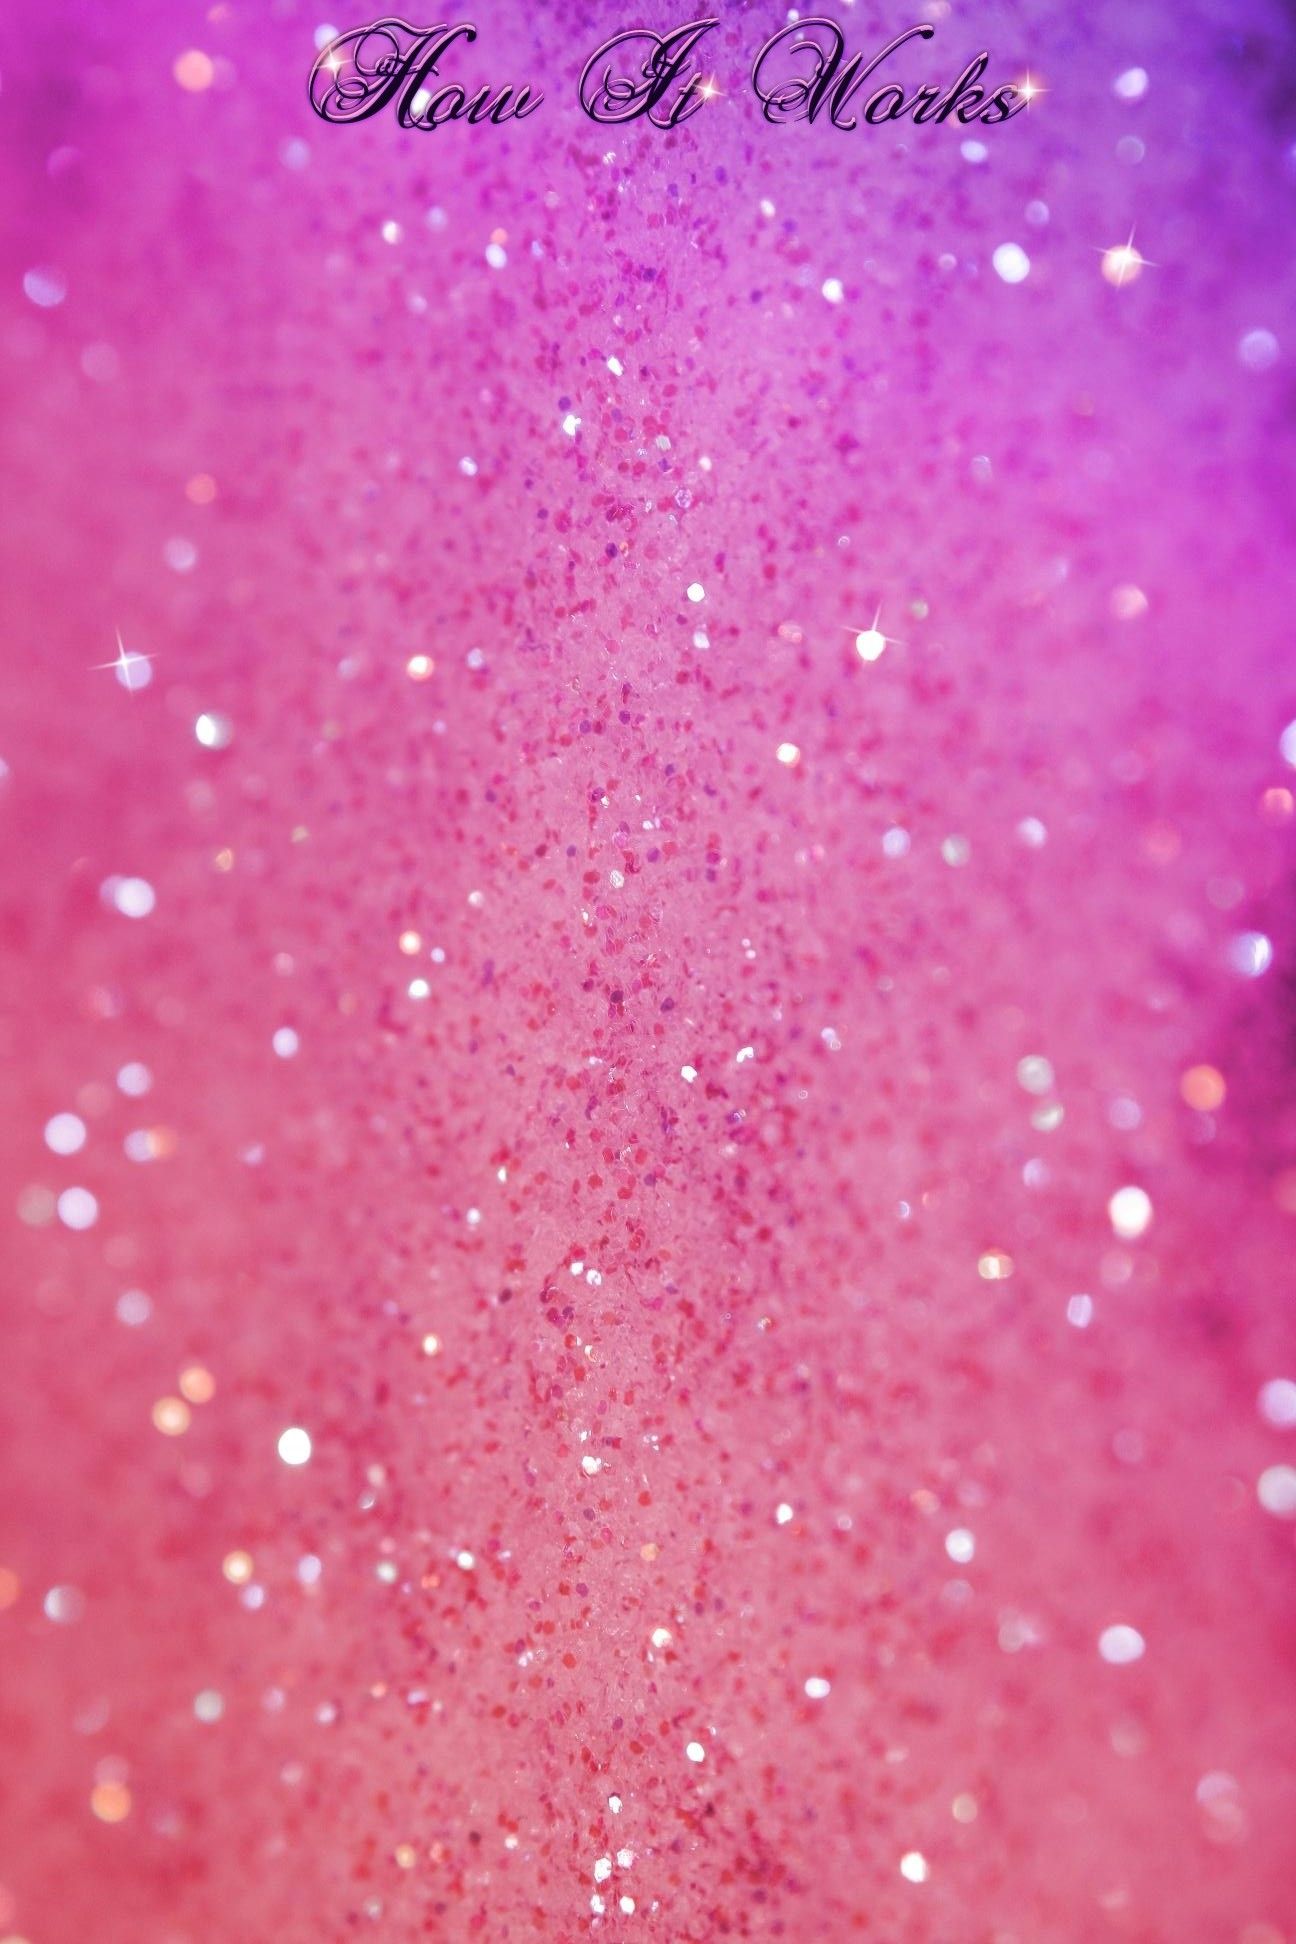 Sparkly Hello Glitter Wallpaper